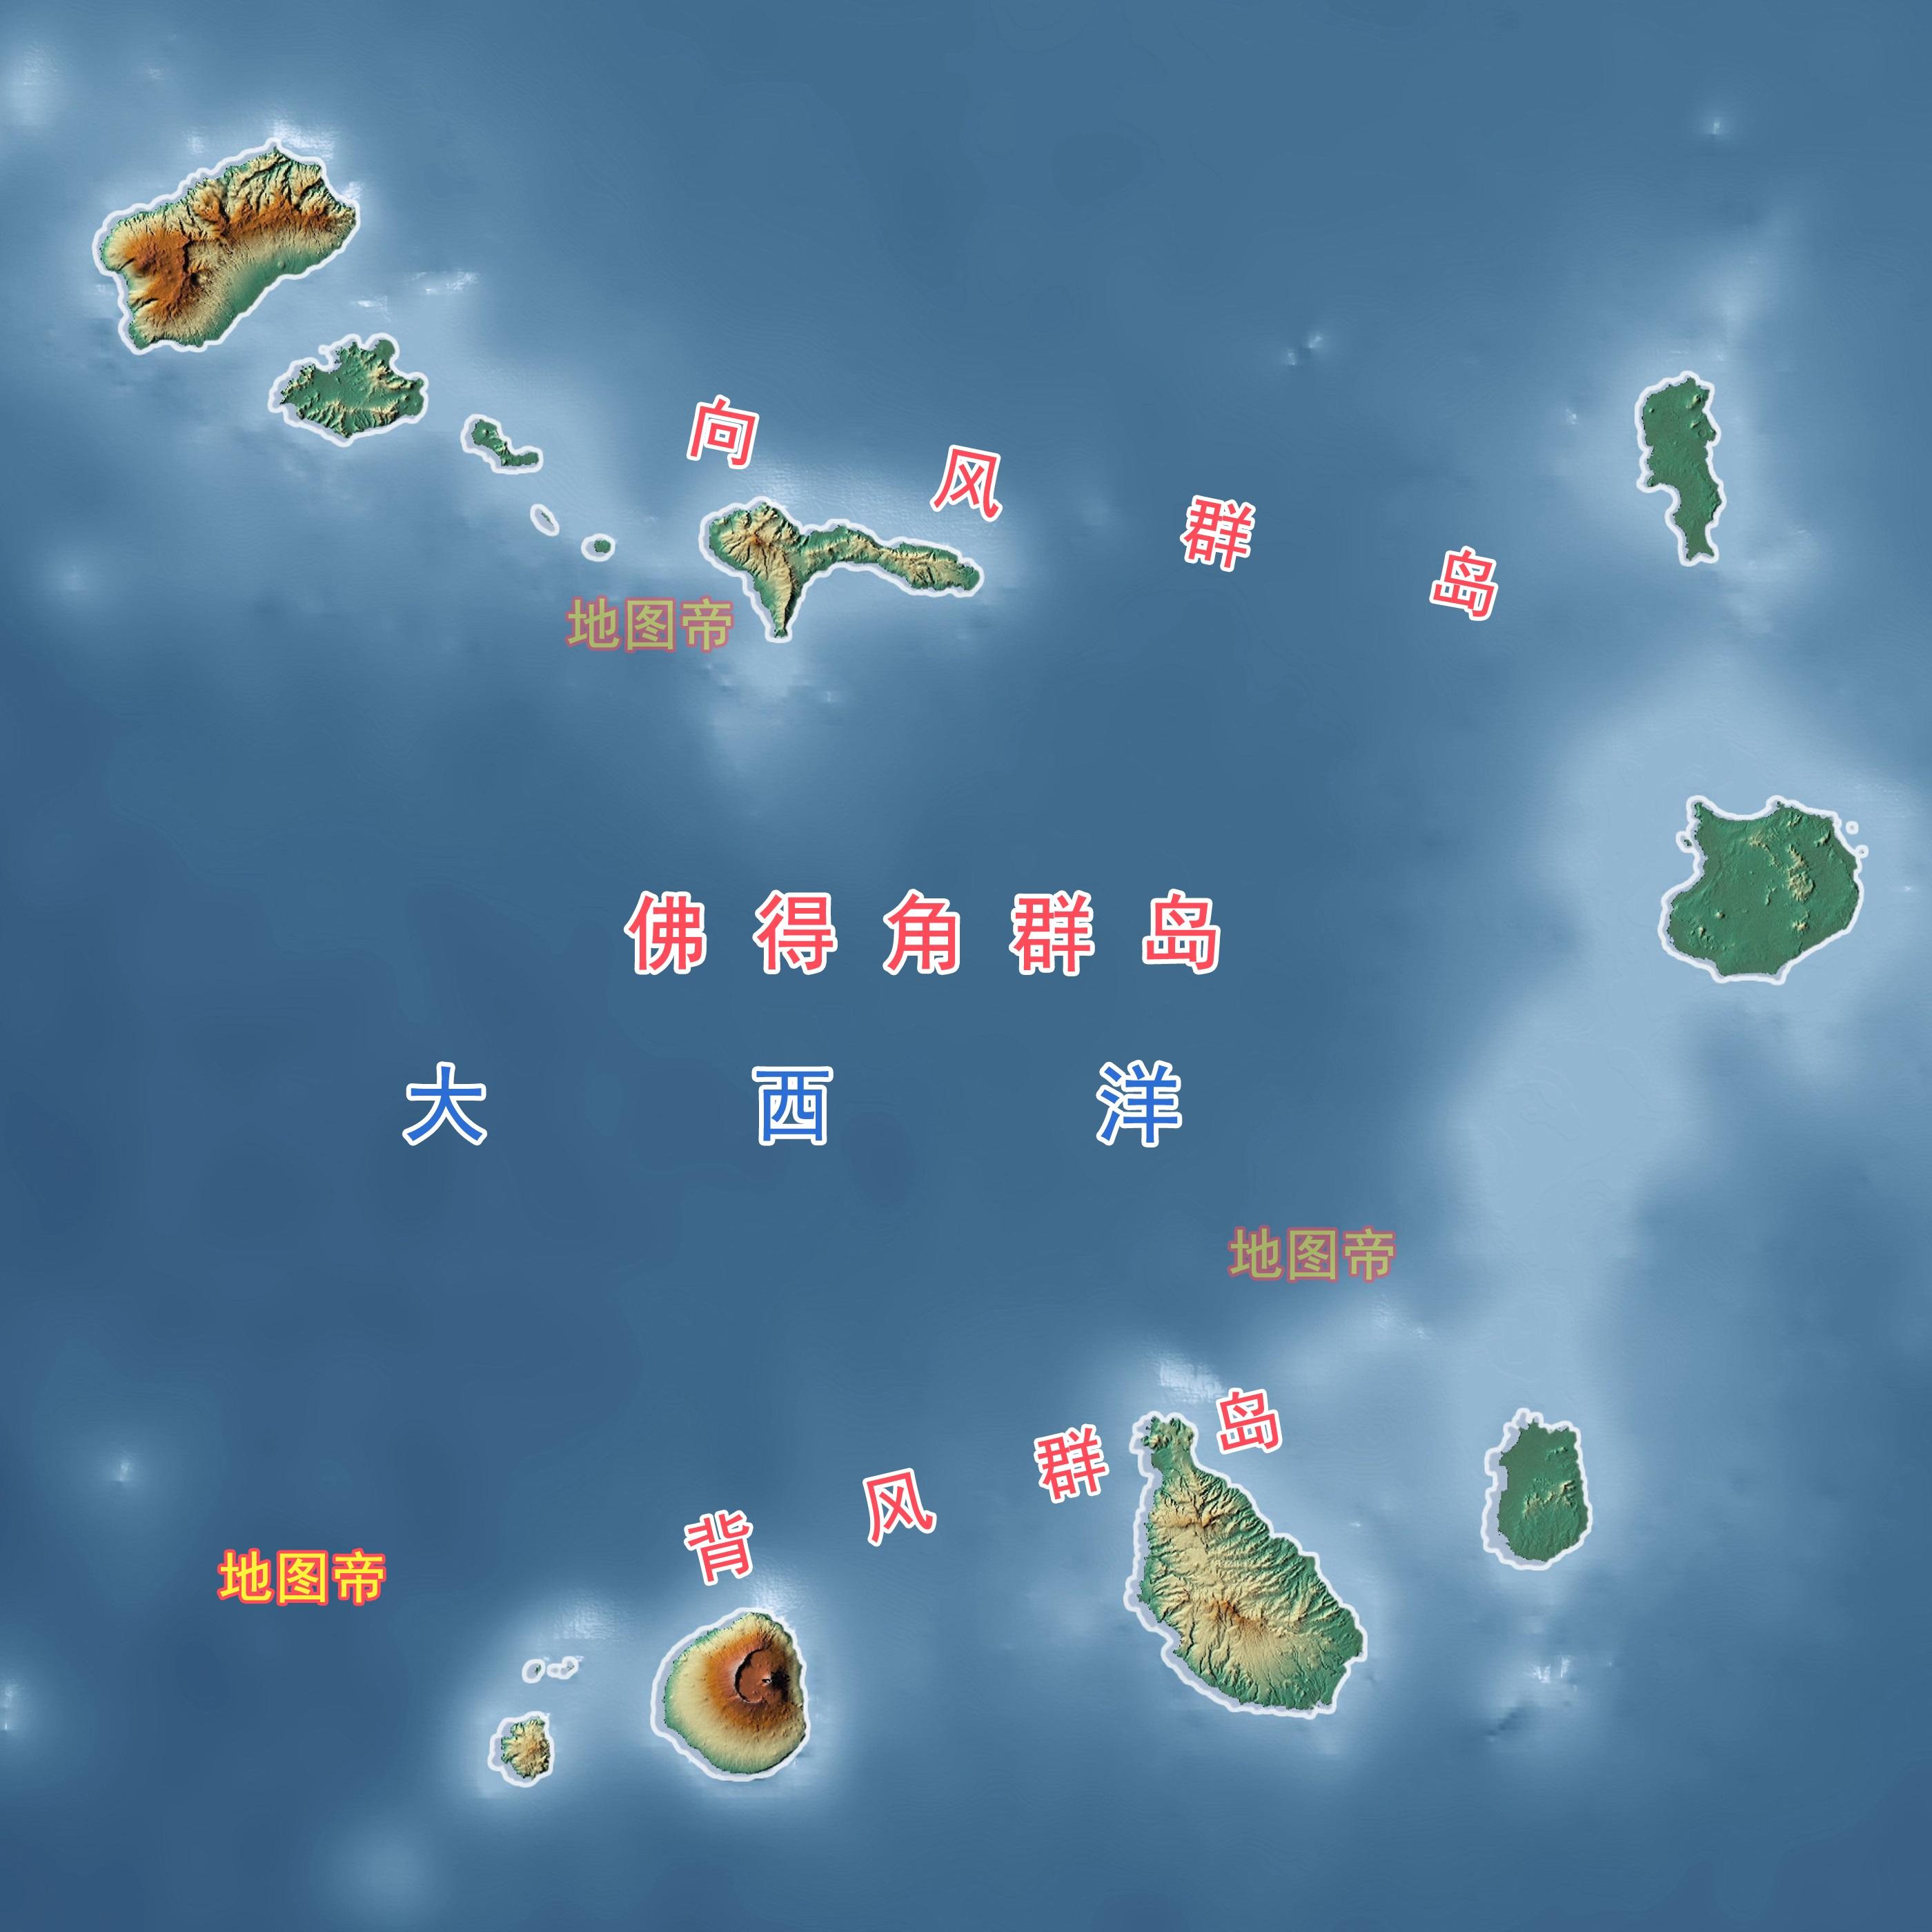 留卡斯群岛位置图片图片